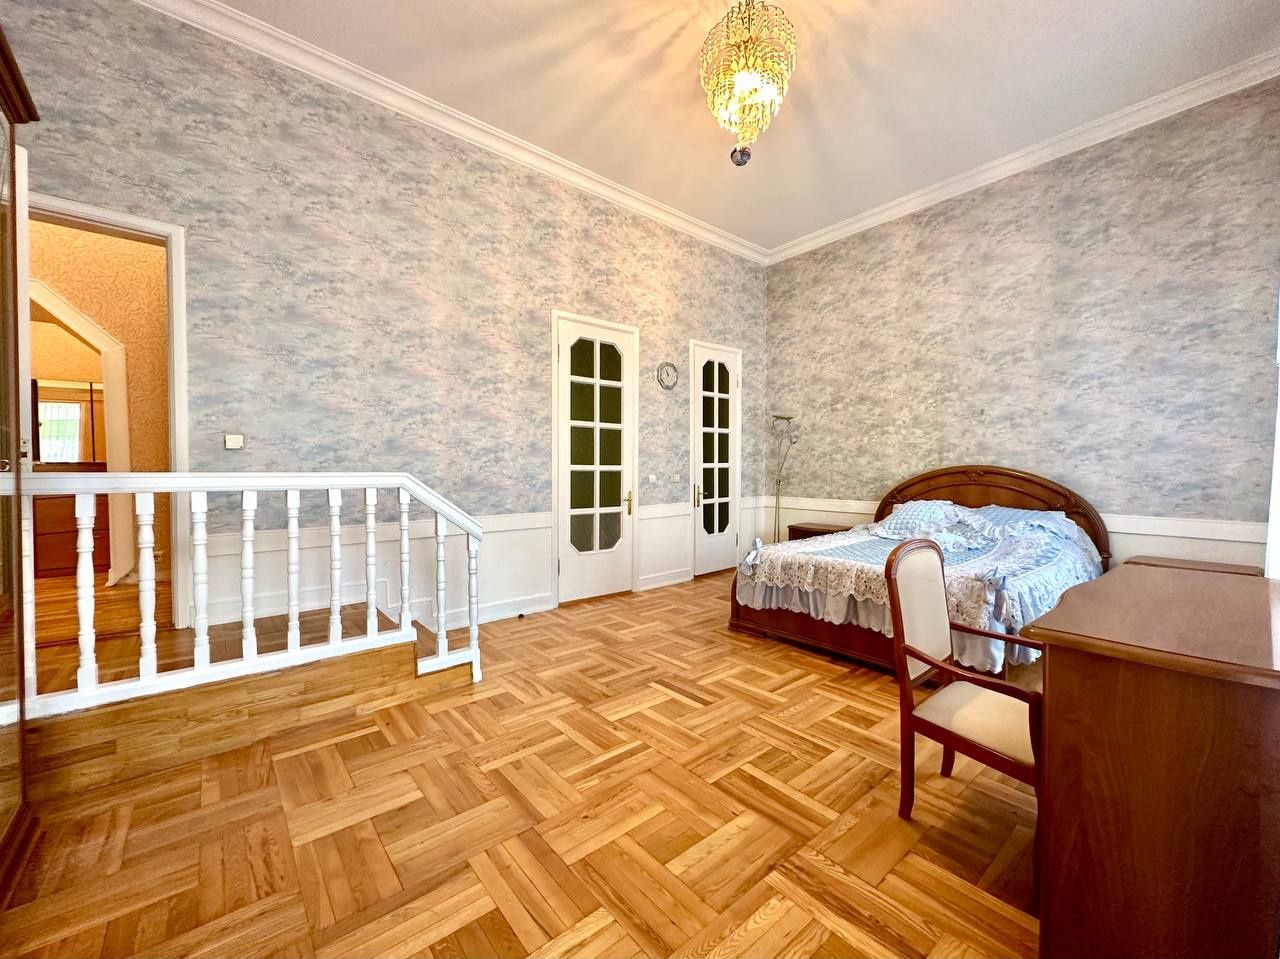 Продам квартиру на ул.Тургеневская S-125 m2,Клубный дом 1917 года